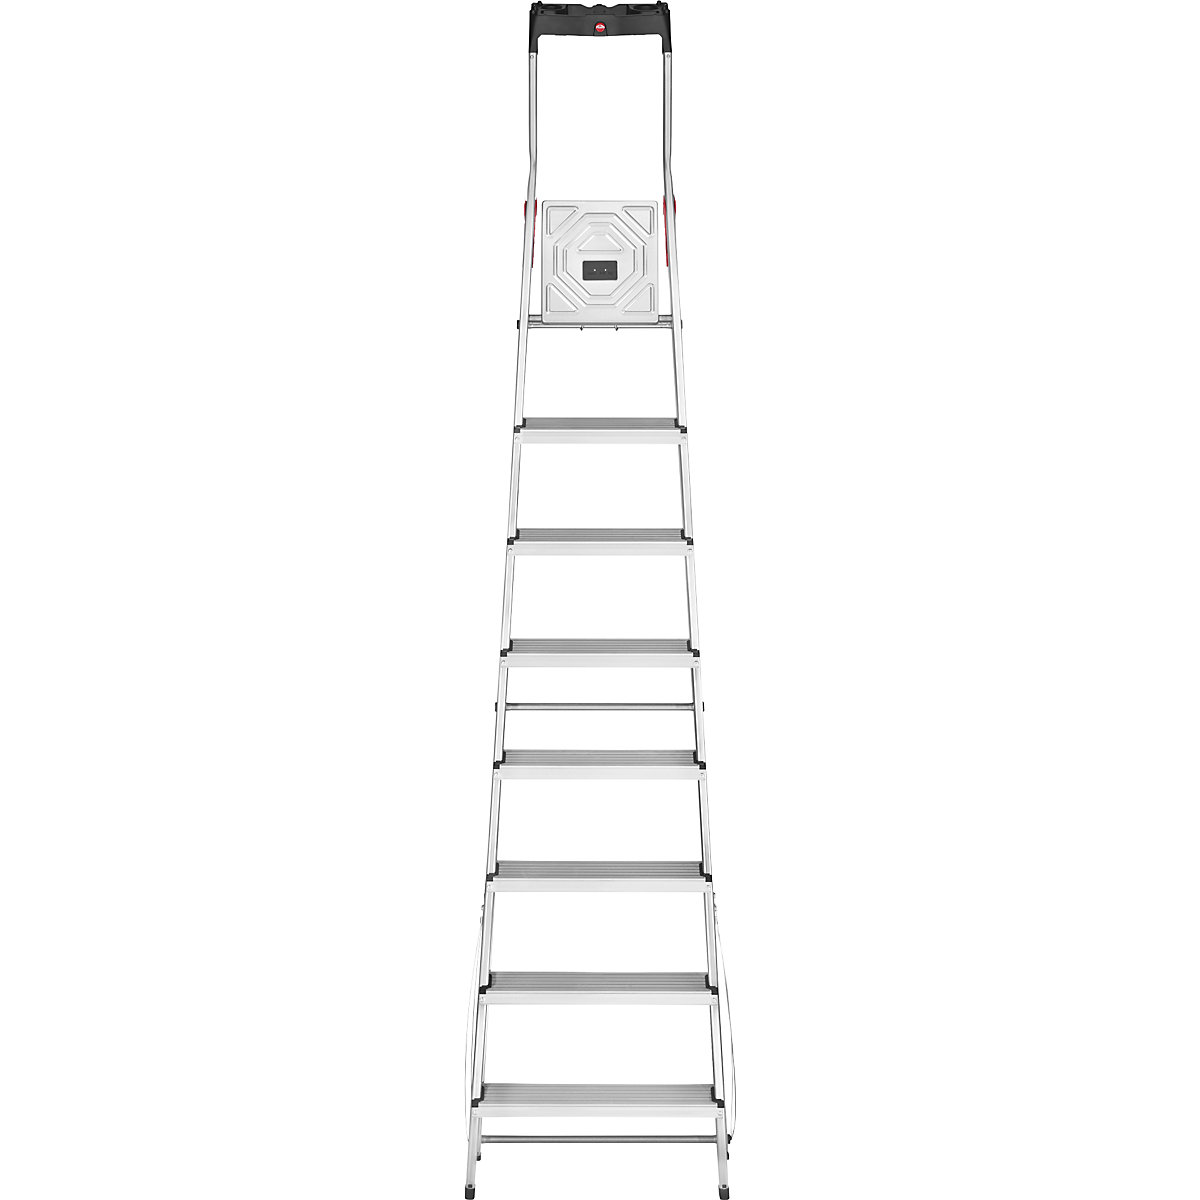 Aluminijasta dvokraka lestev s stopnicami StandardLine L60 – Hailo (Slika izdelka 15)